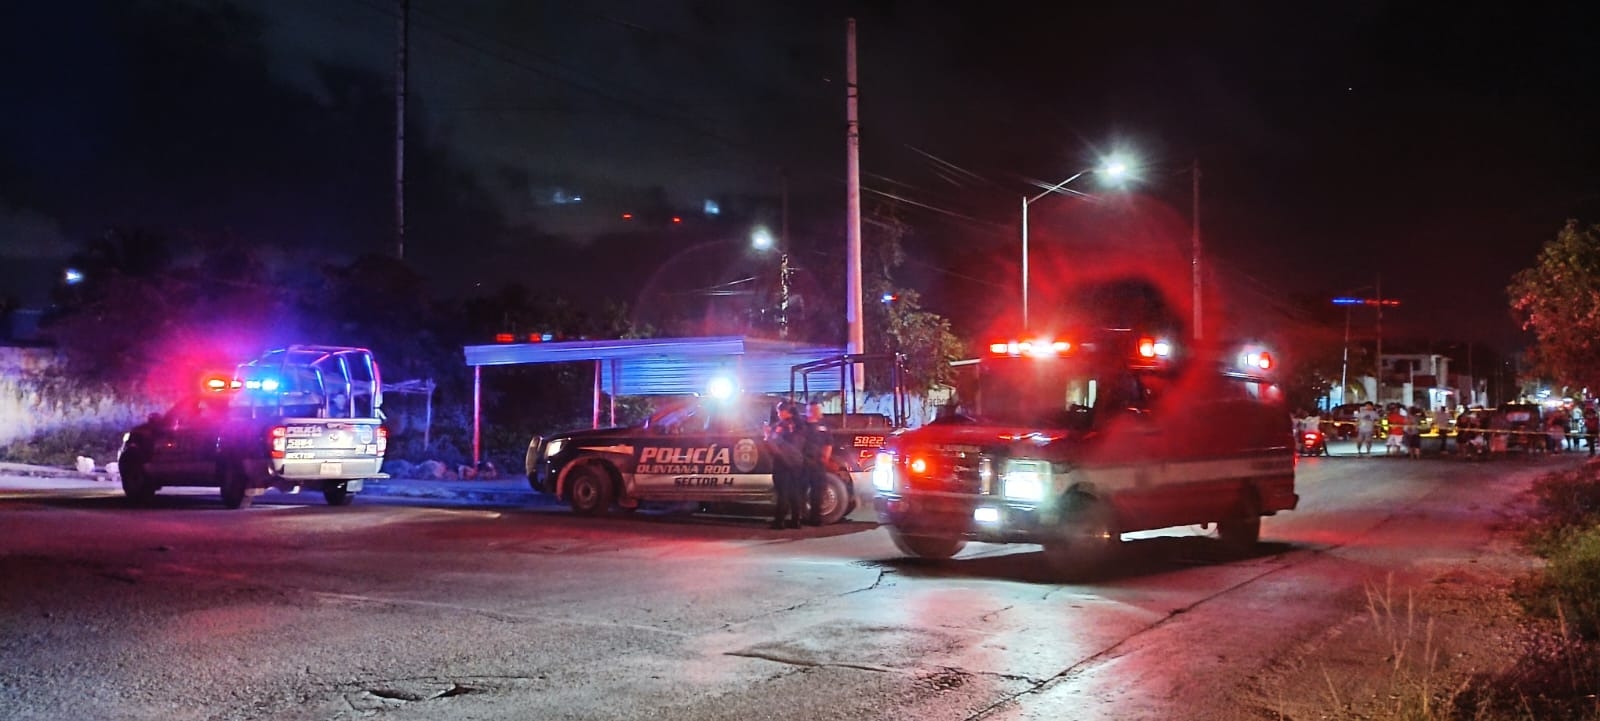 Asesinan a tiros a un hombre que caminaba por la calle en Cancún